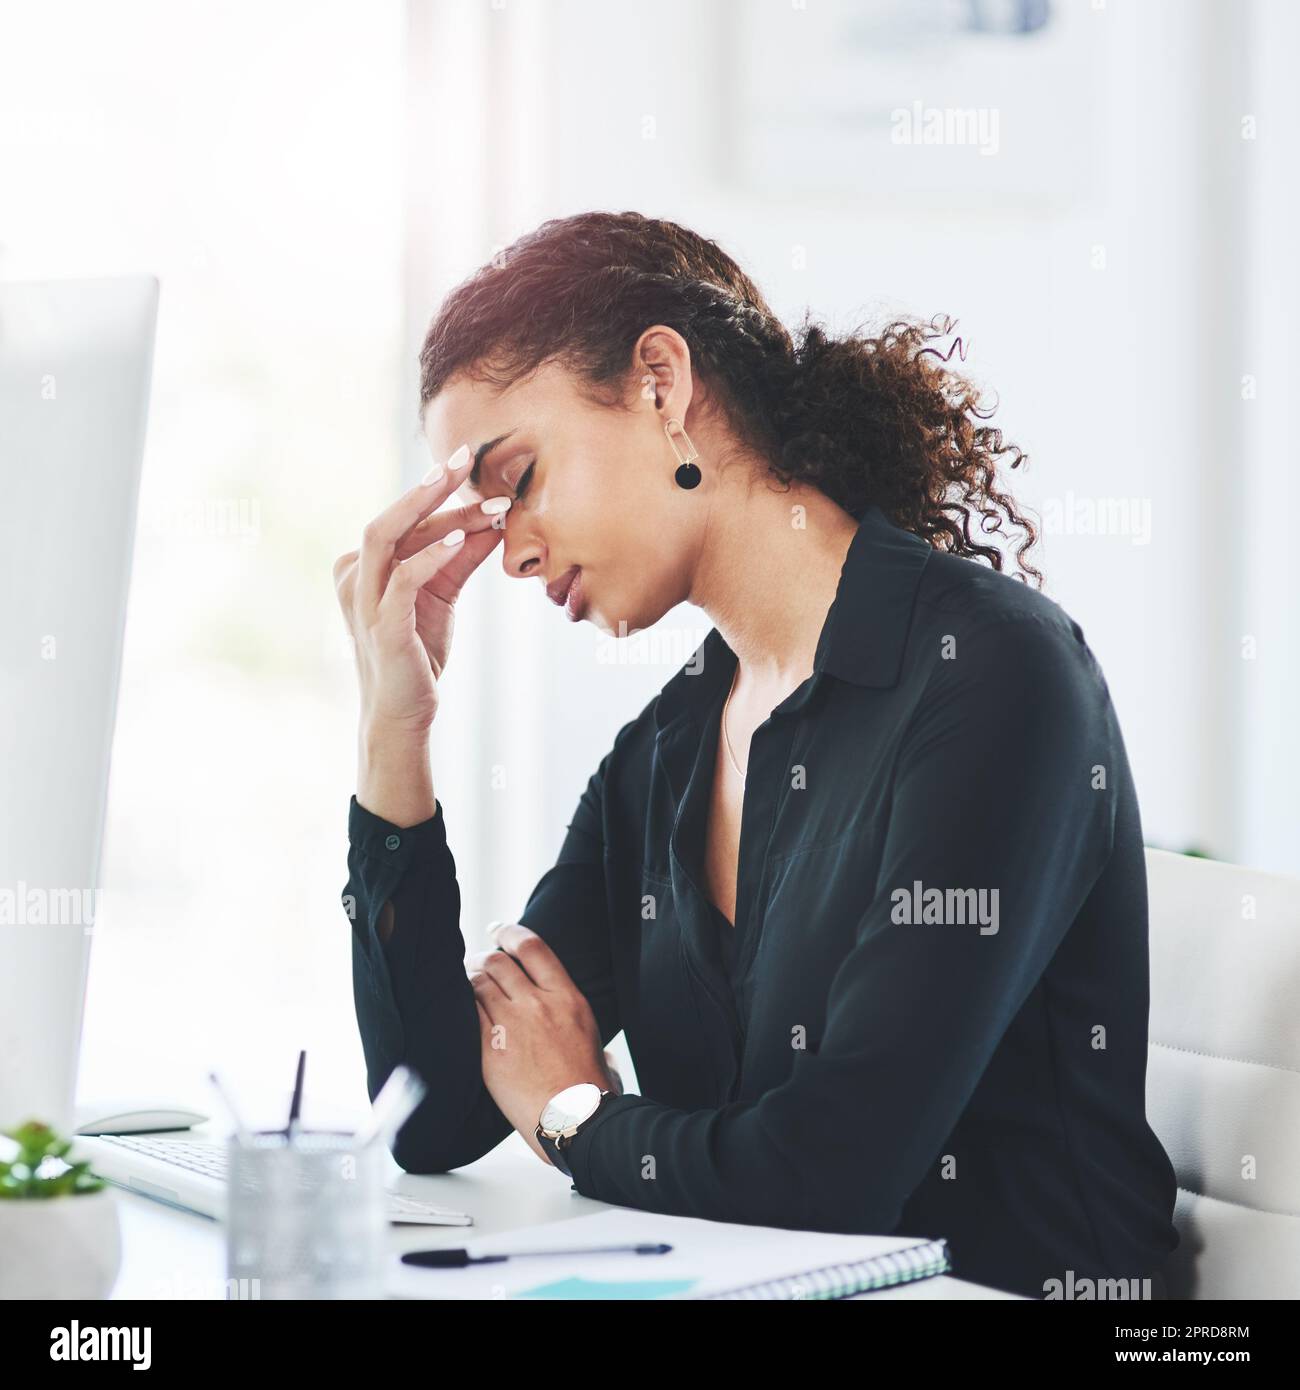 Je ne peux pas saisir la journée avec tout ce stress. Une jeune femme d'affaires qui regarde stressée pendant qu'elle travaille dans un bureau. Banque D'Images